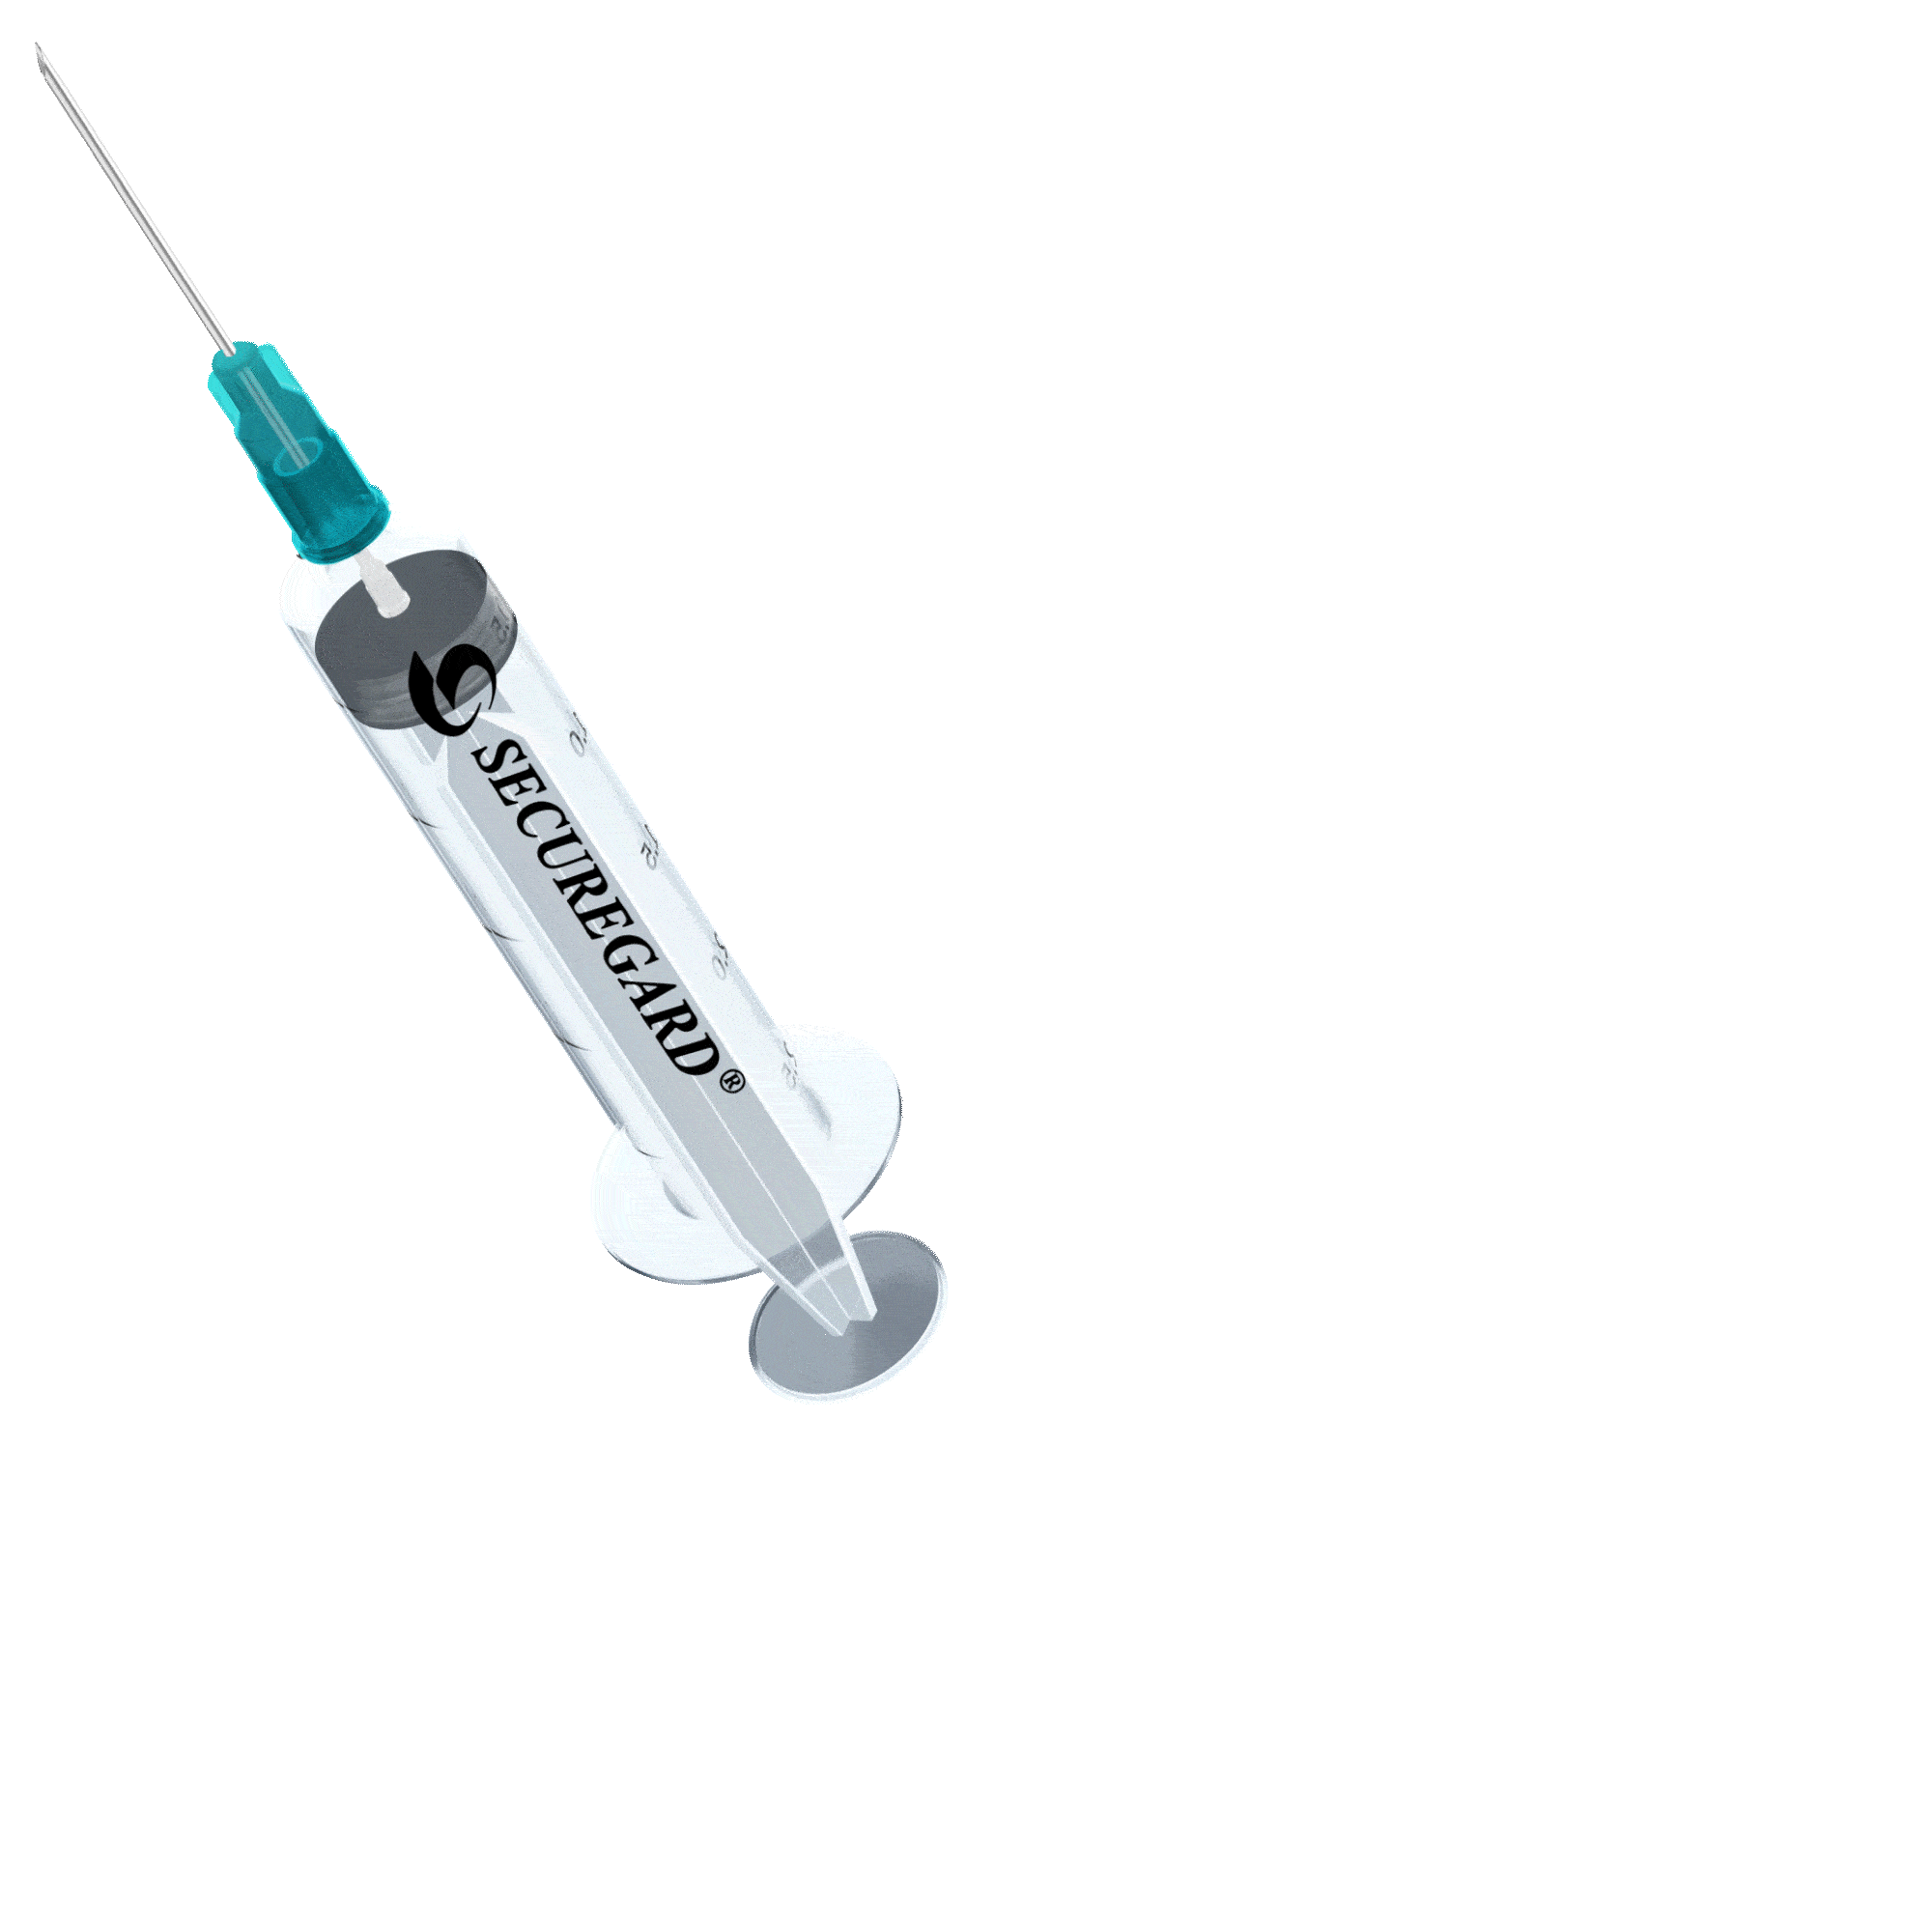 https://safegardmedical.com/wp-content/uploads/2023/03/Secureguard-Needle-blue-Animated-c.gif